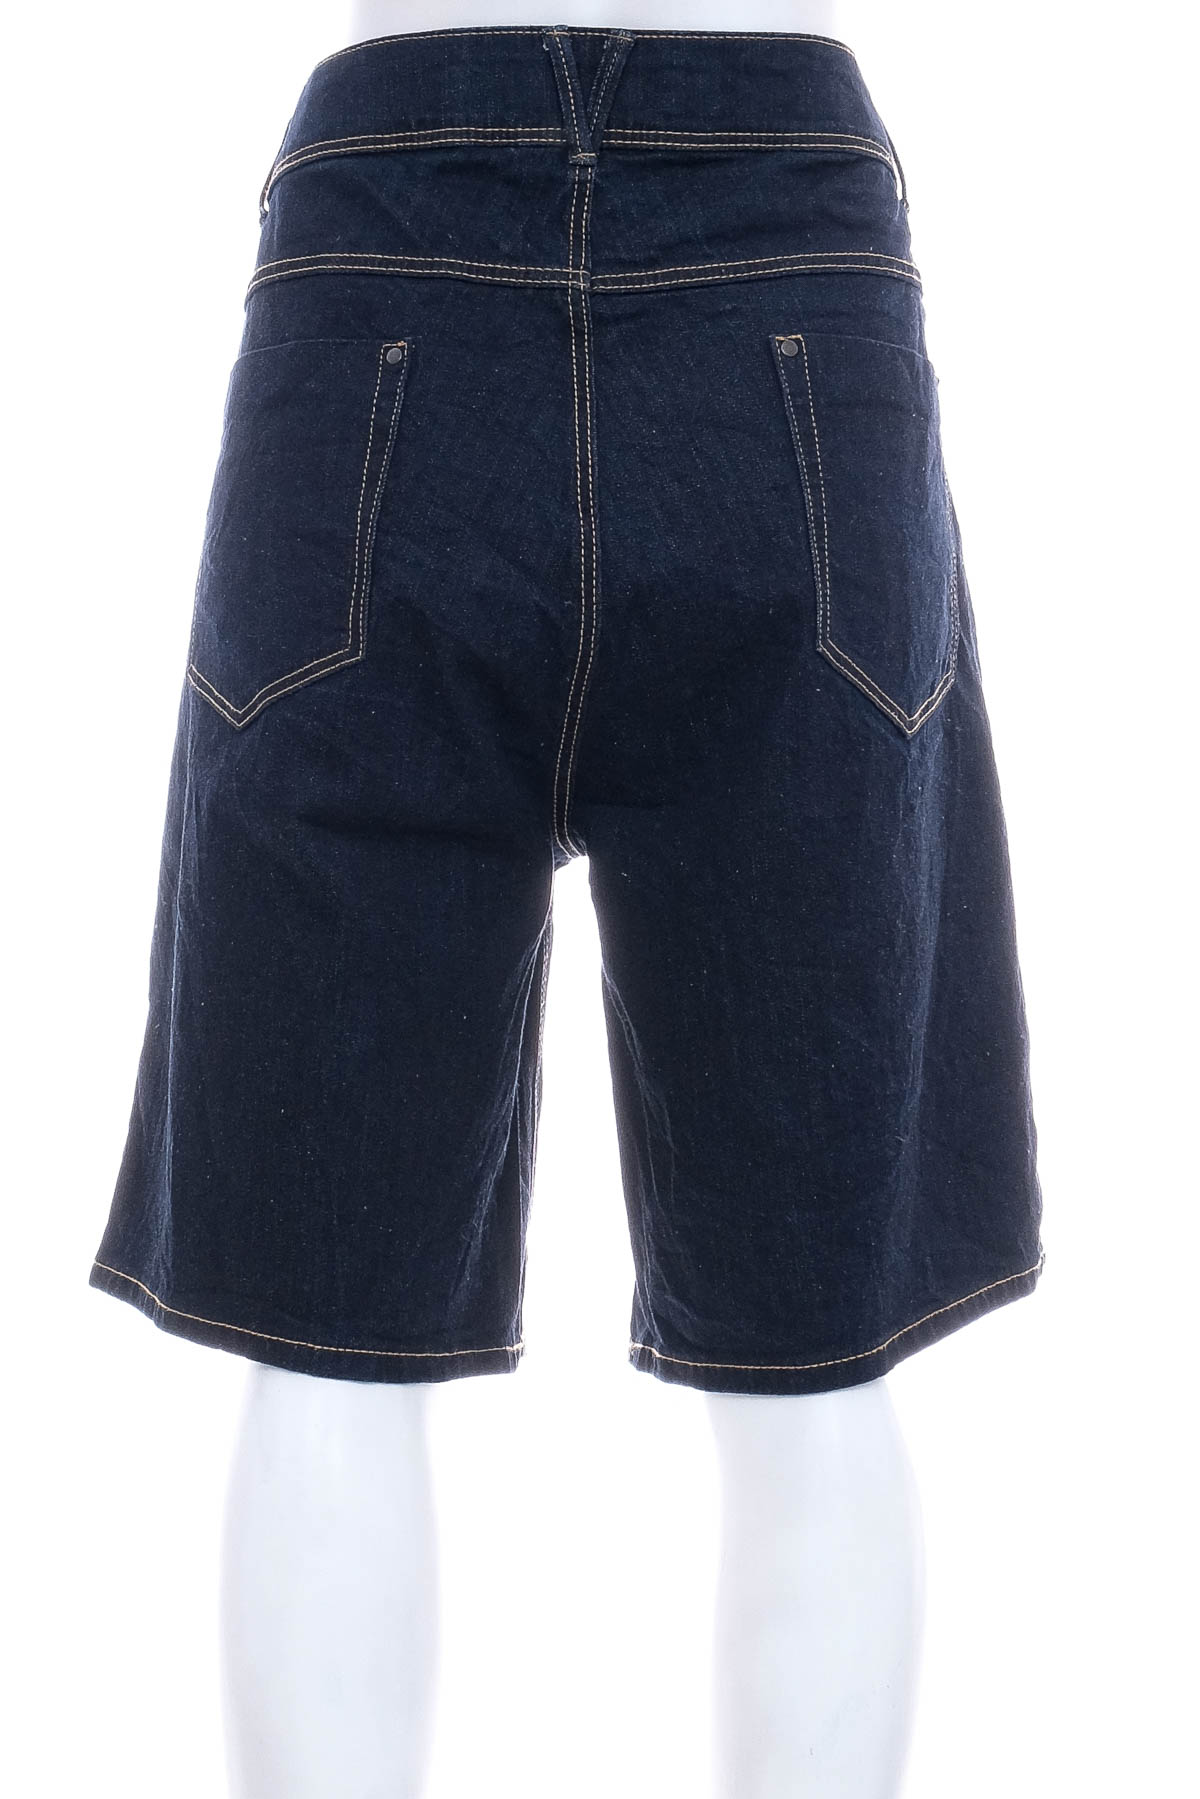 Female shorts - KIABI - 1